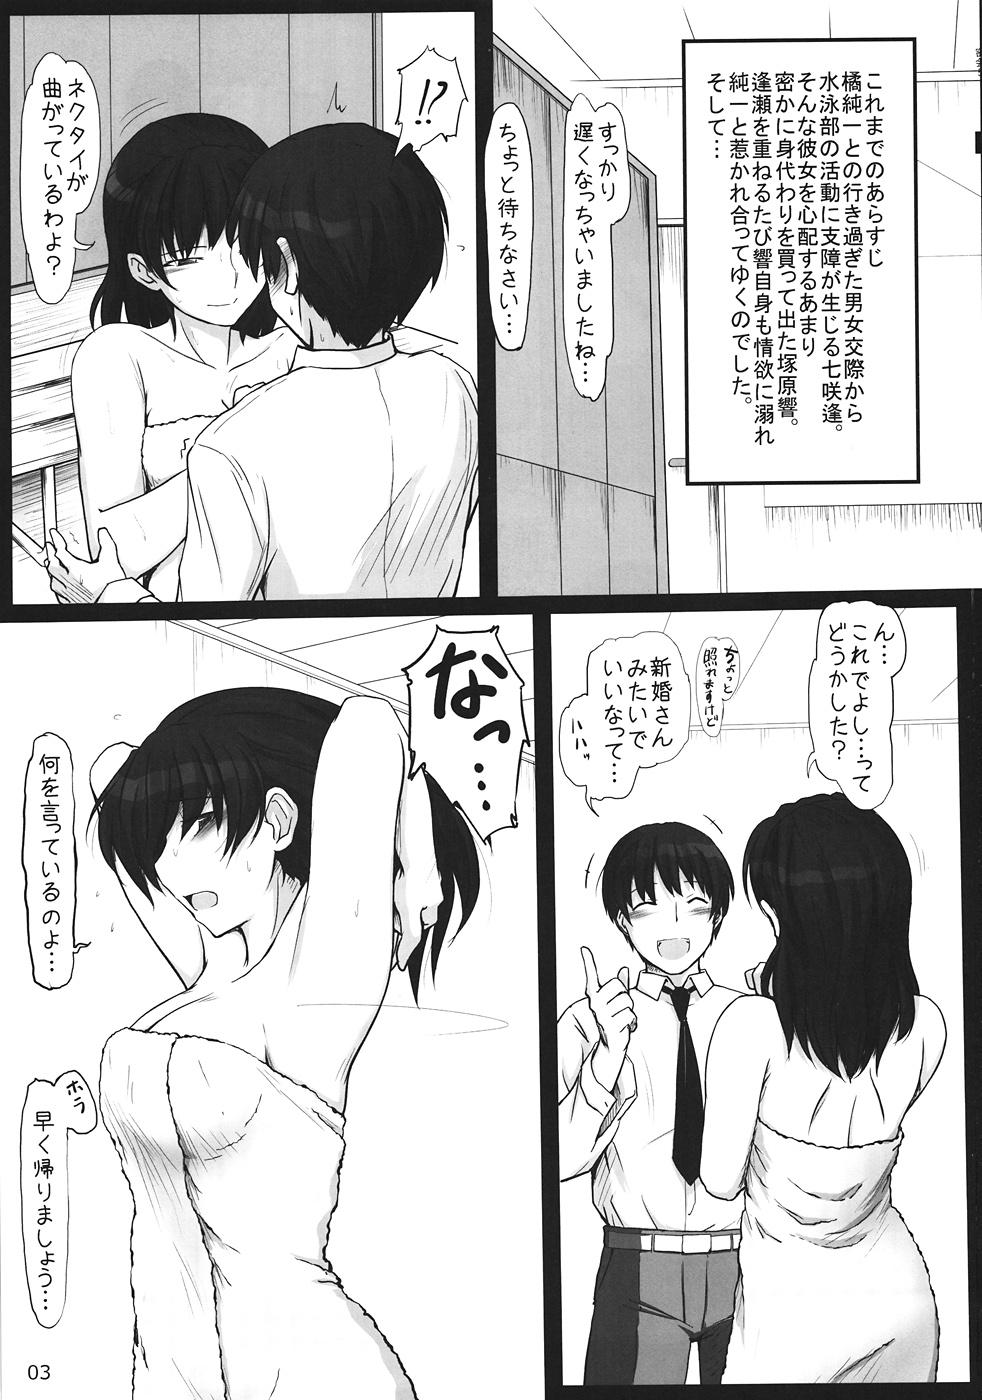 8teen Mikkai 5 - Amagami Rabuda - Page 2